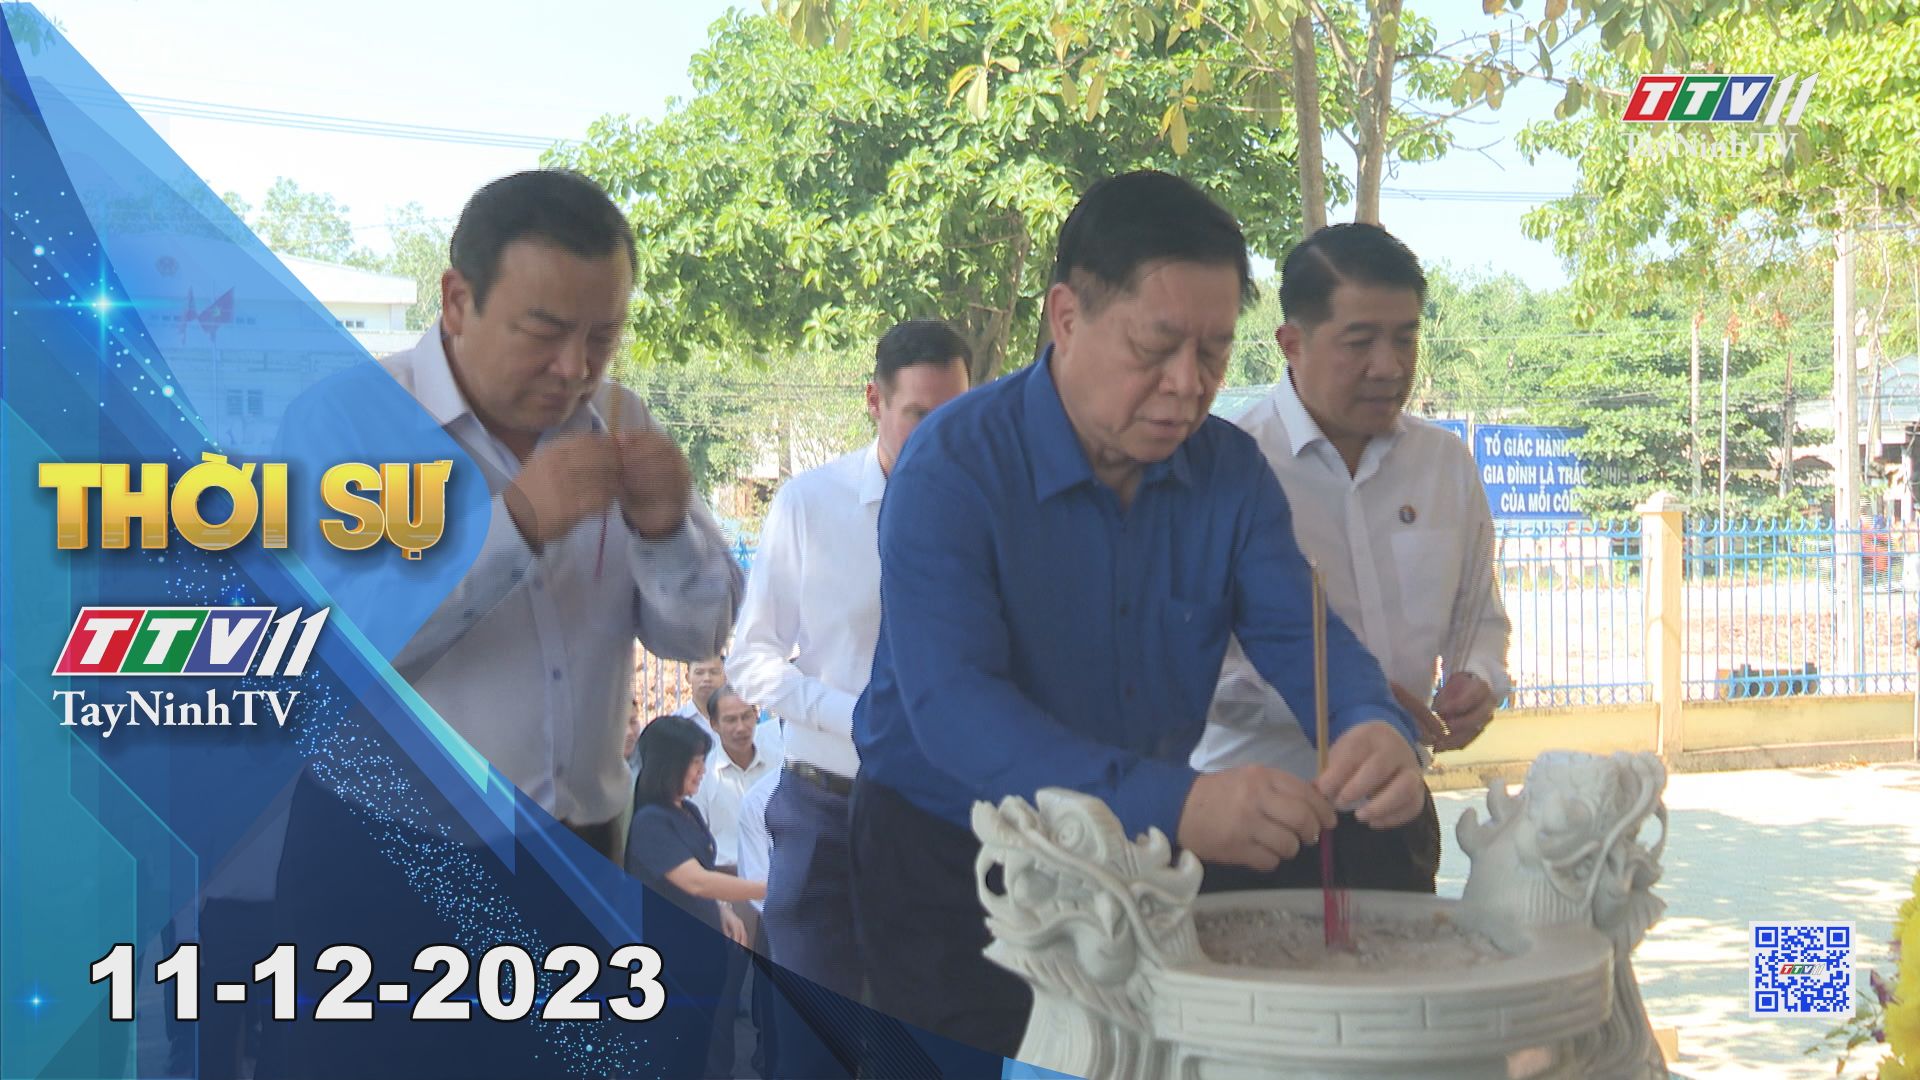 Thời sự Tây Ninh 11-12-2023 | Tin tức hôm nay | TayNinhTV